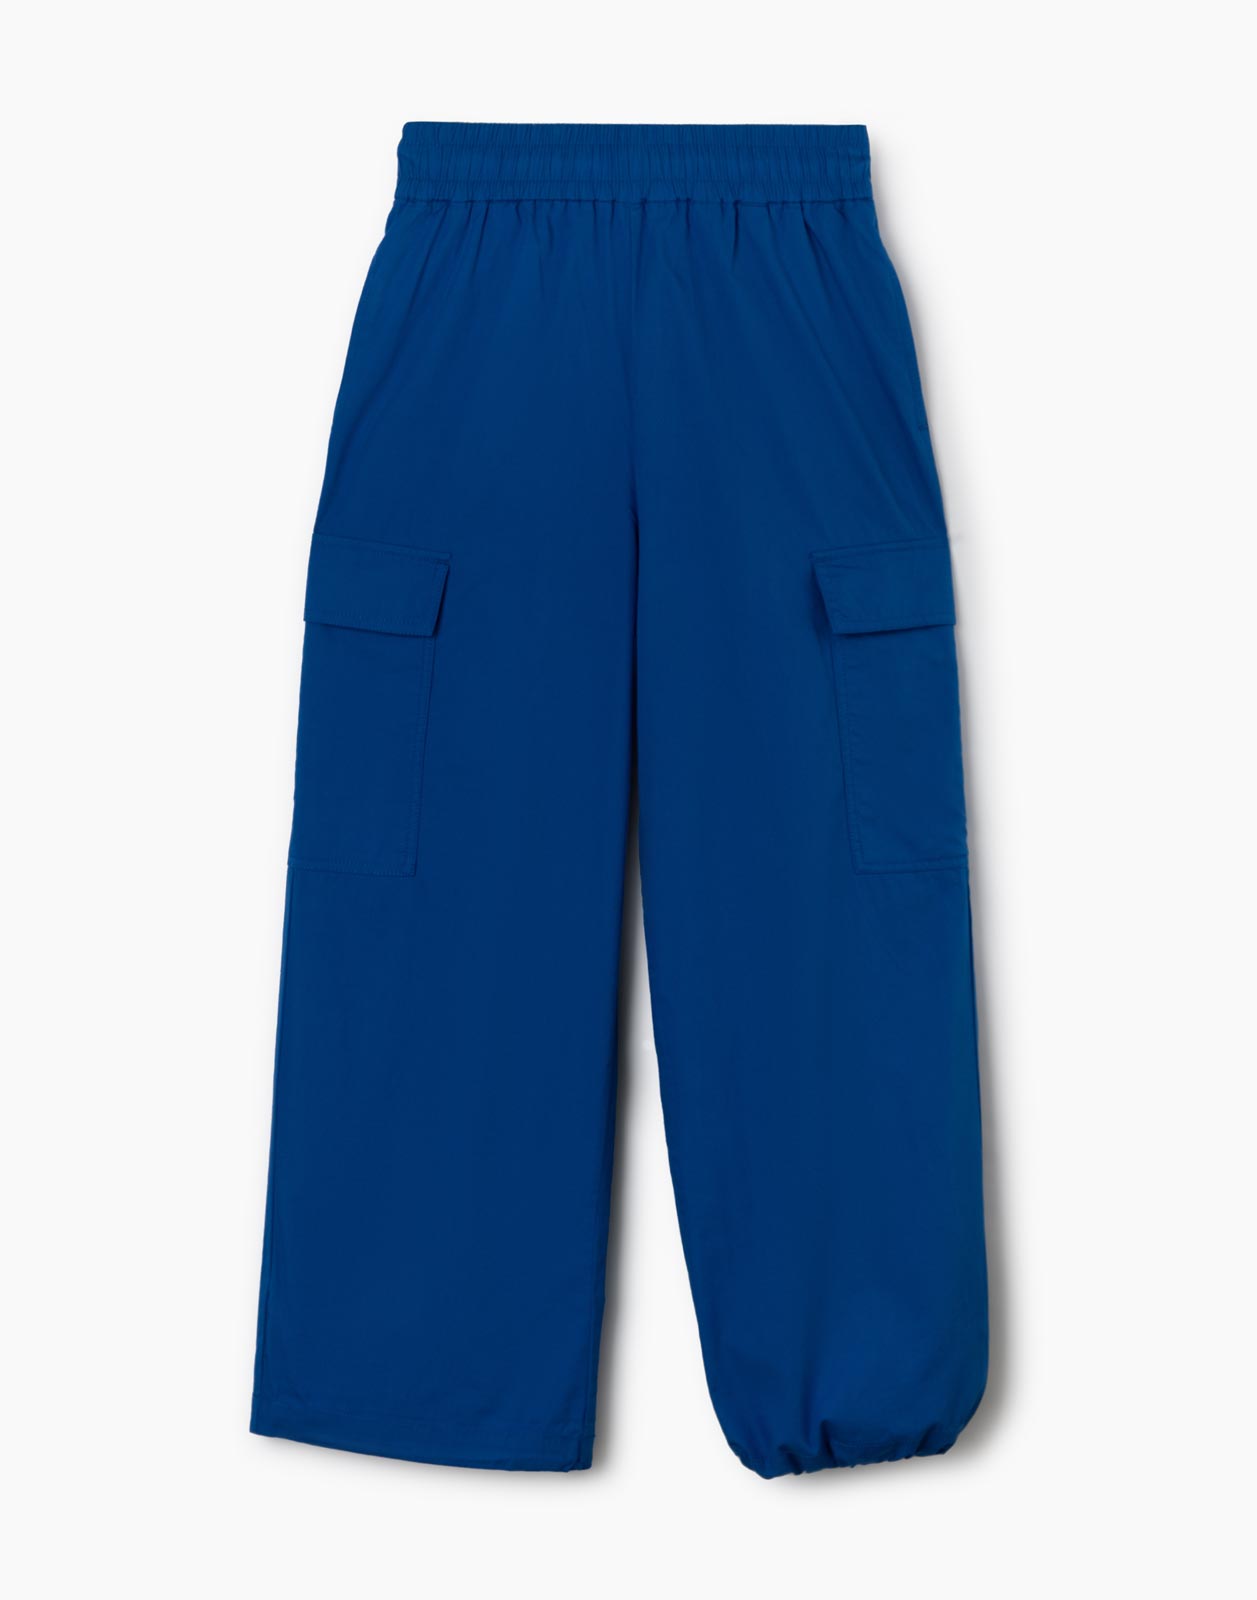 Синие брюки-трансформеры с карманами карго для девочки р.164